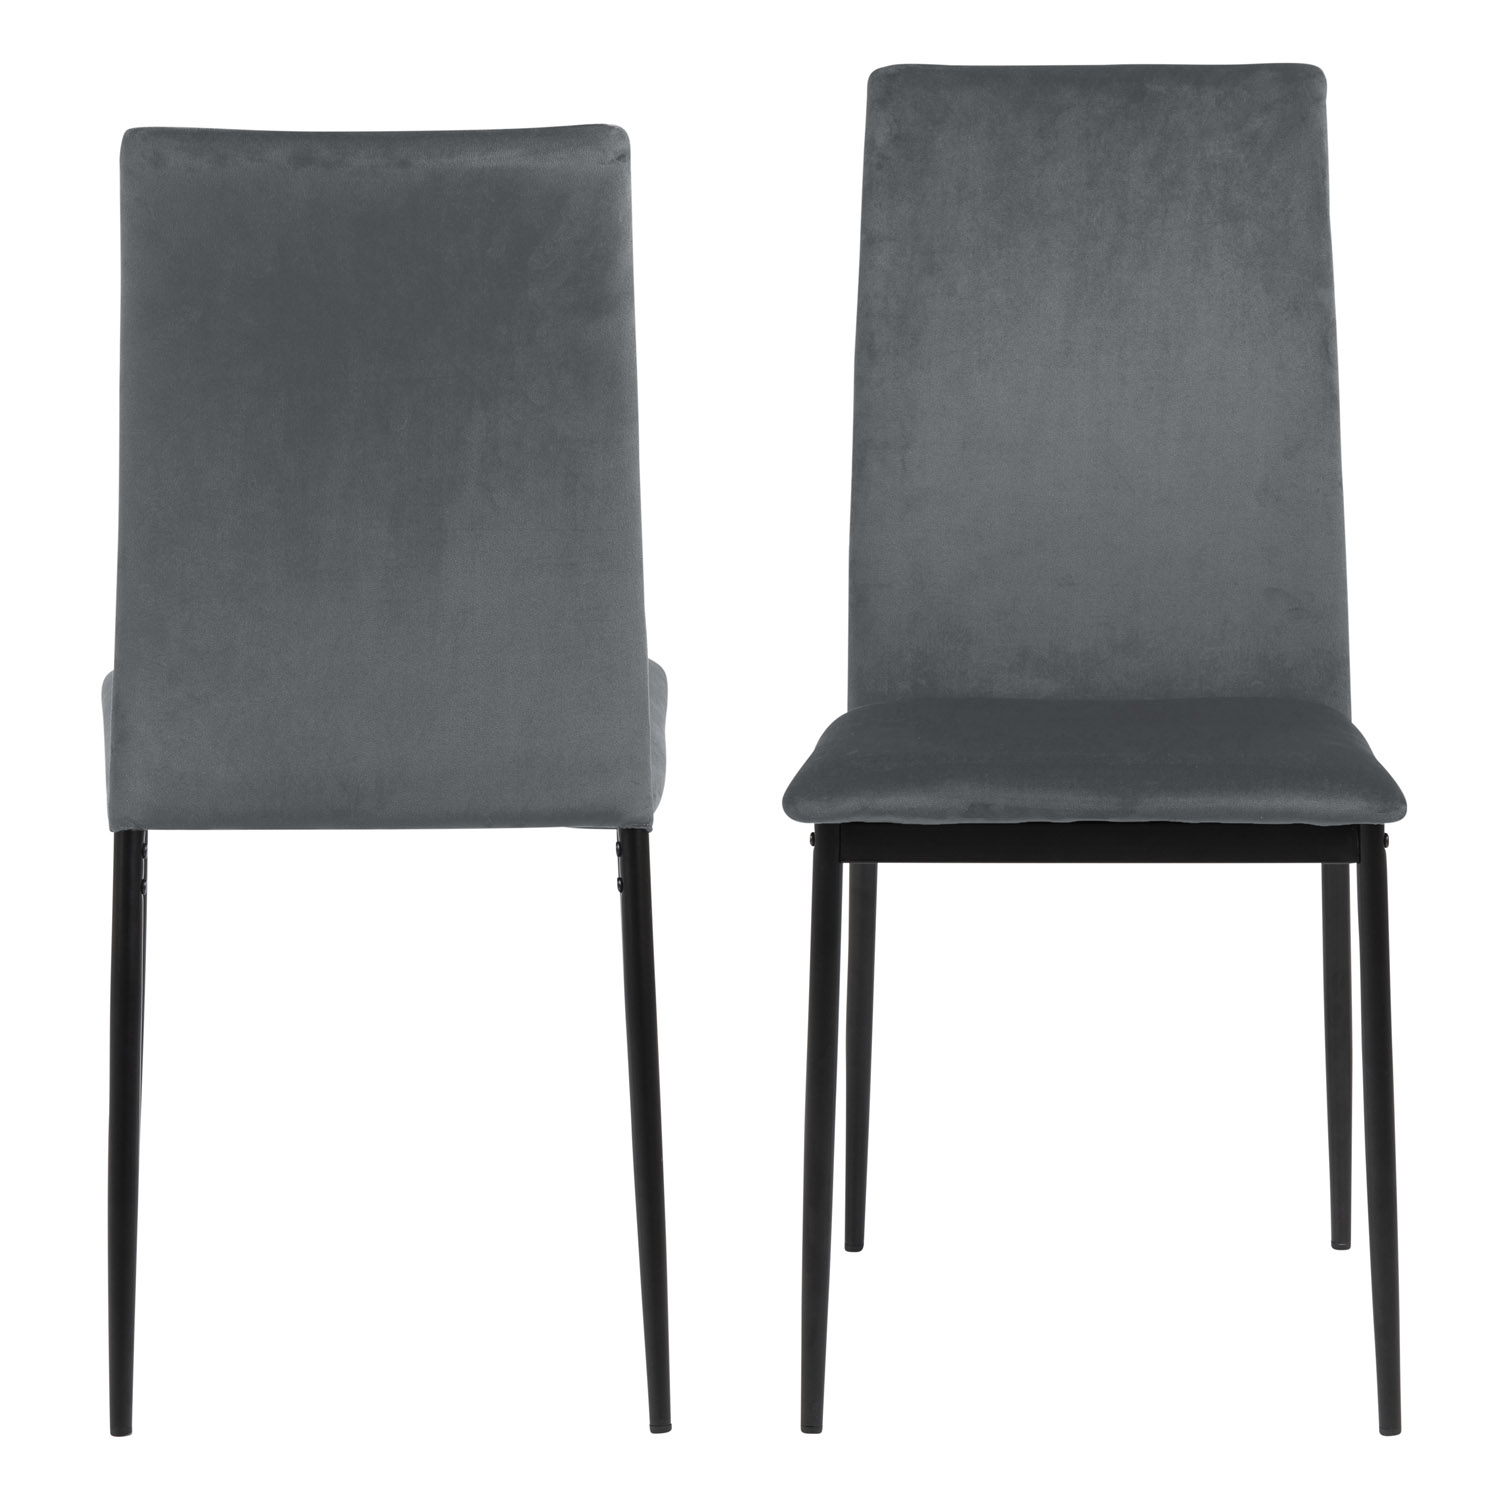 ACT NORDIC Demina spisebordsstol - mørkegrå polyester og sort metal